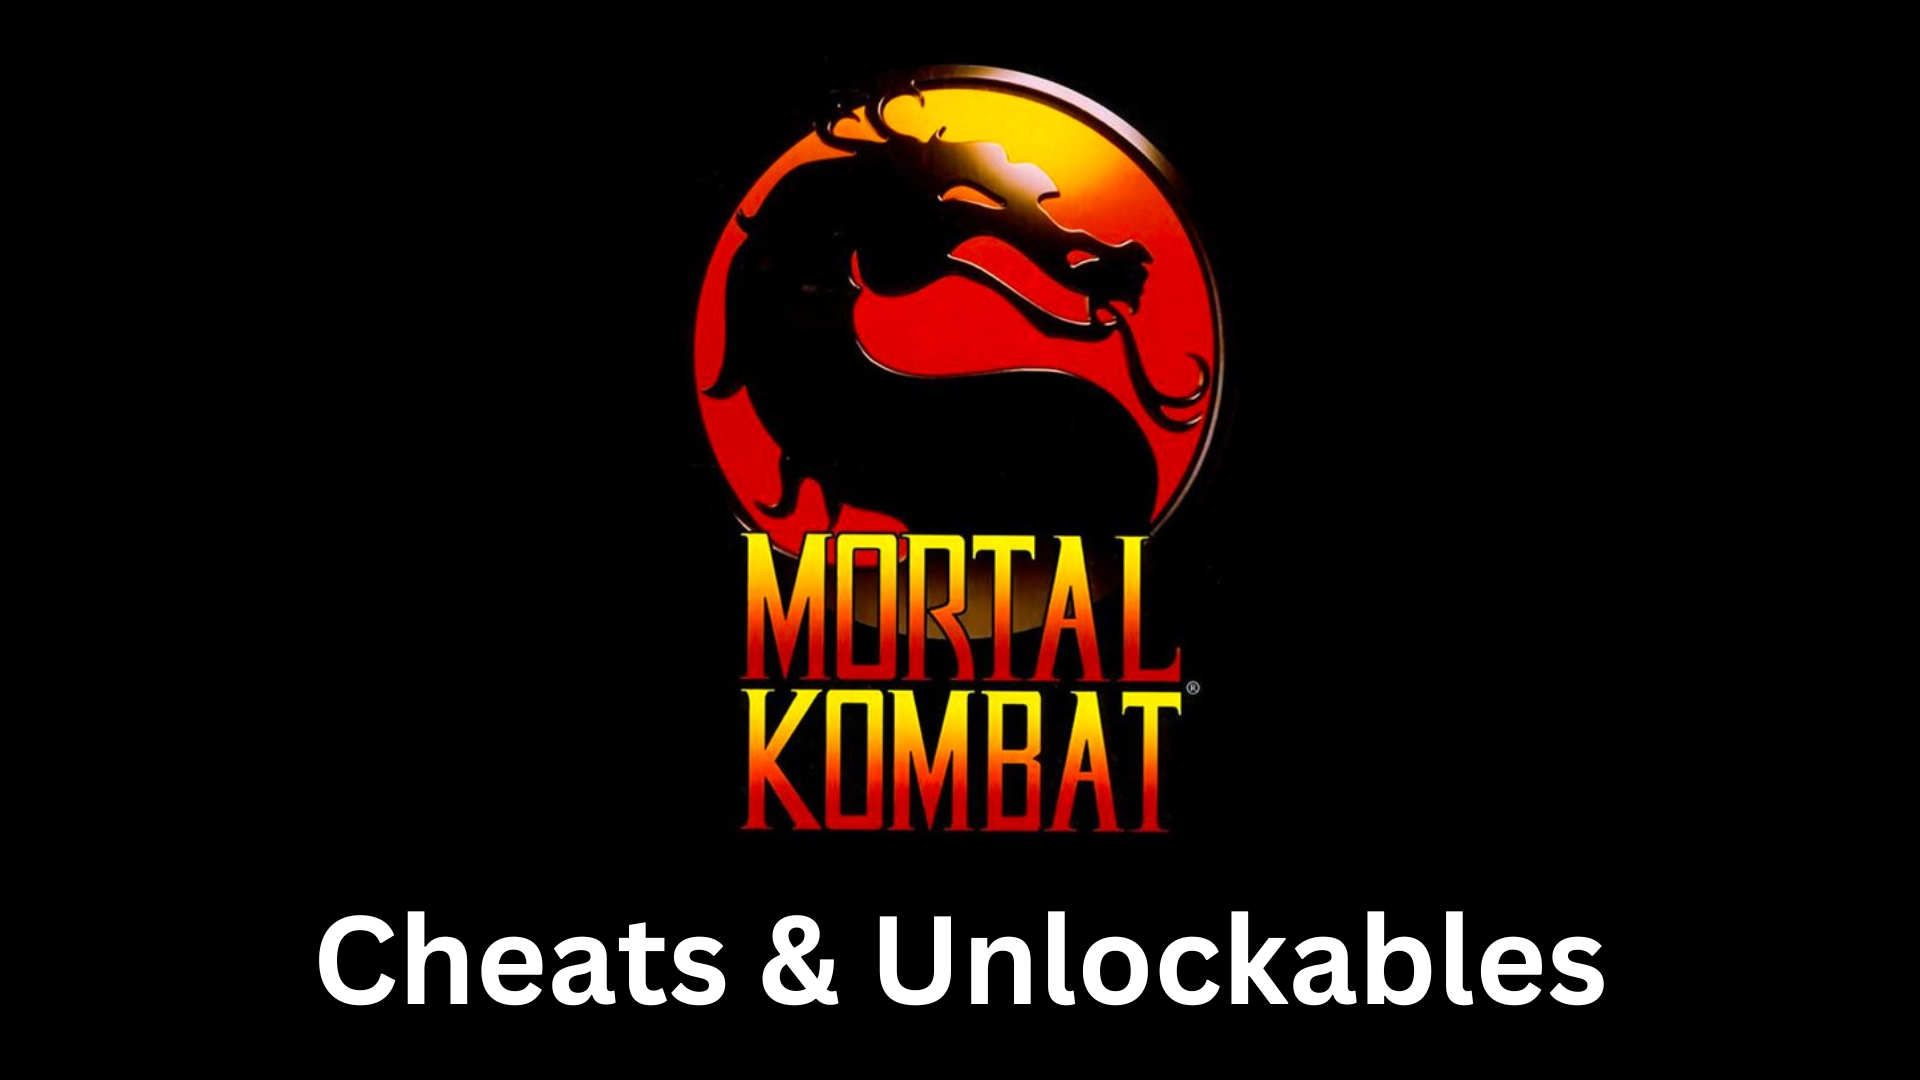 mortal kombat (1992) cheats and unlockables